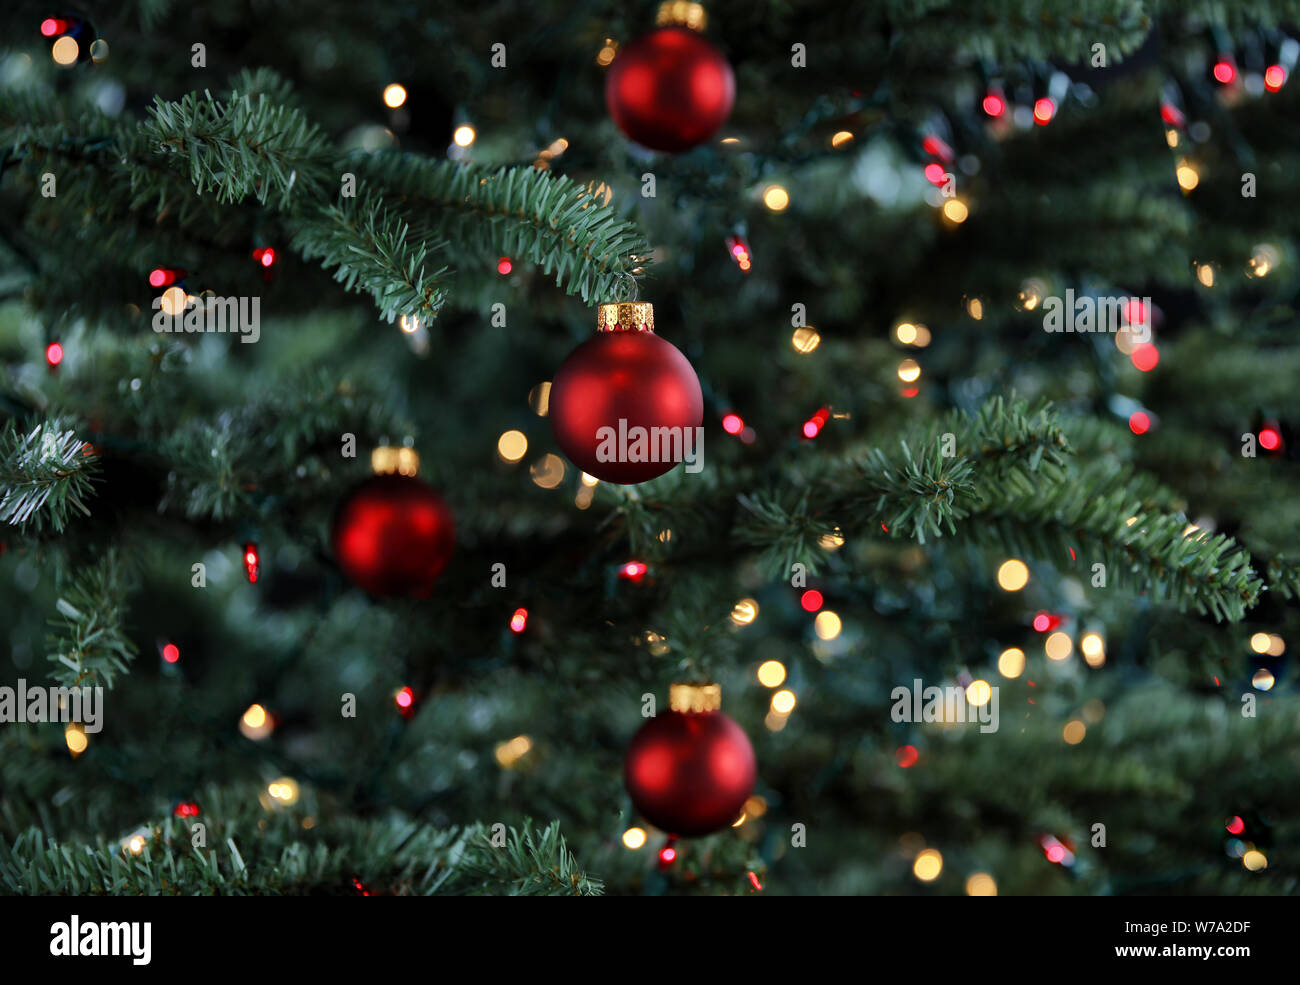 Arbre de Noël lumineux décoré avec des ornements de red ball Banque D'Images